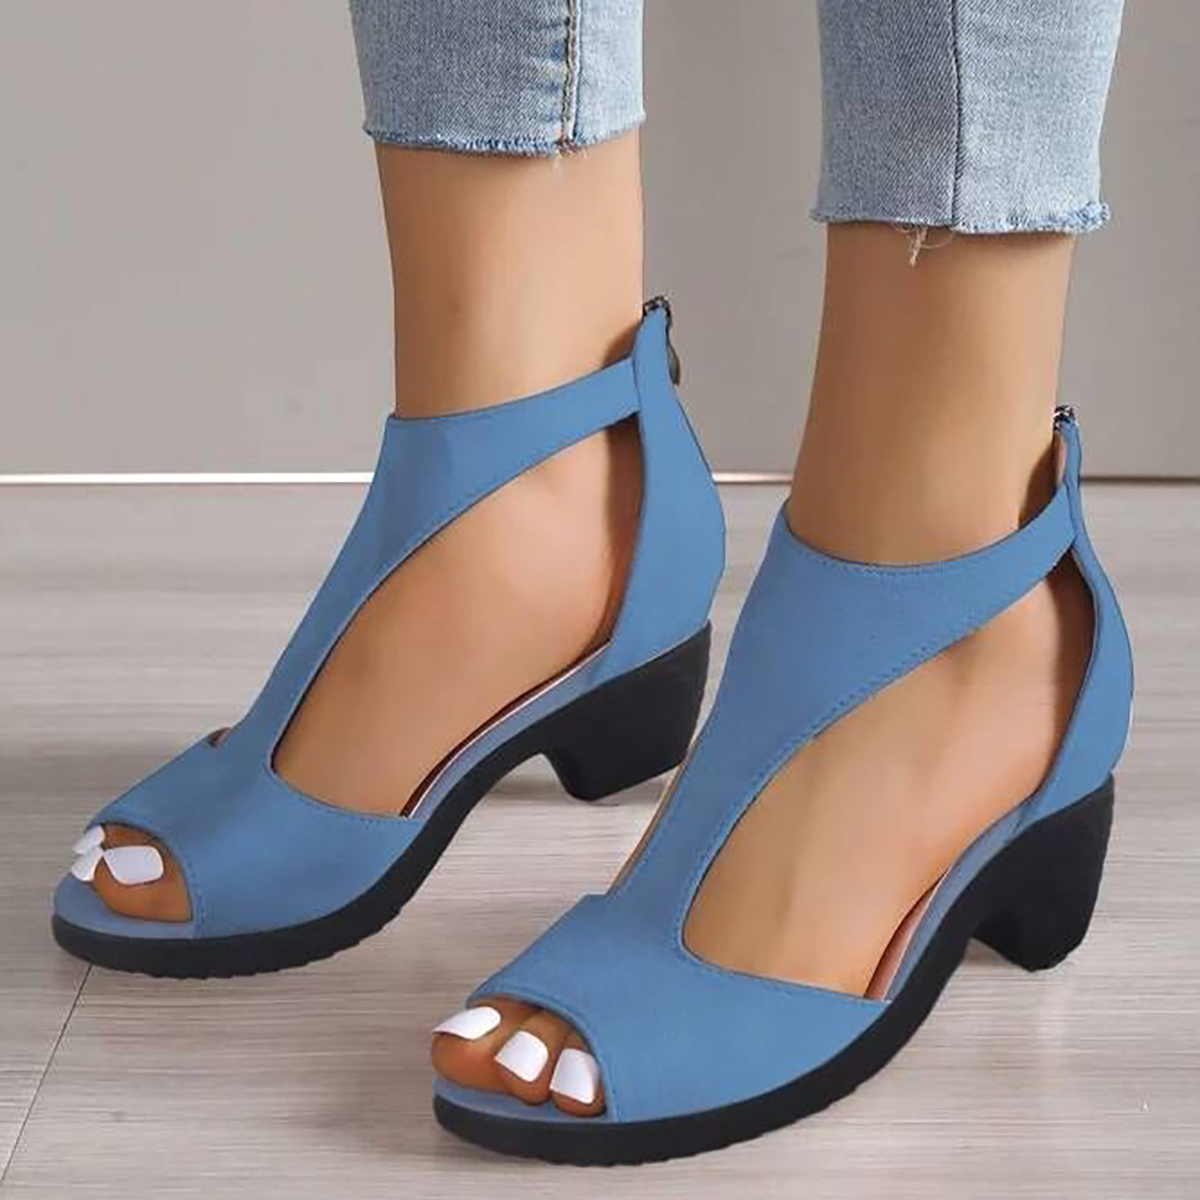 Dusty Blue Peep Toe Mid Heel Sandals